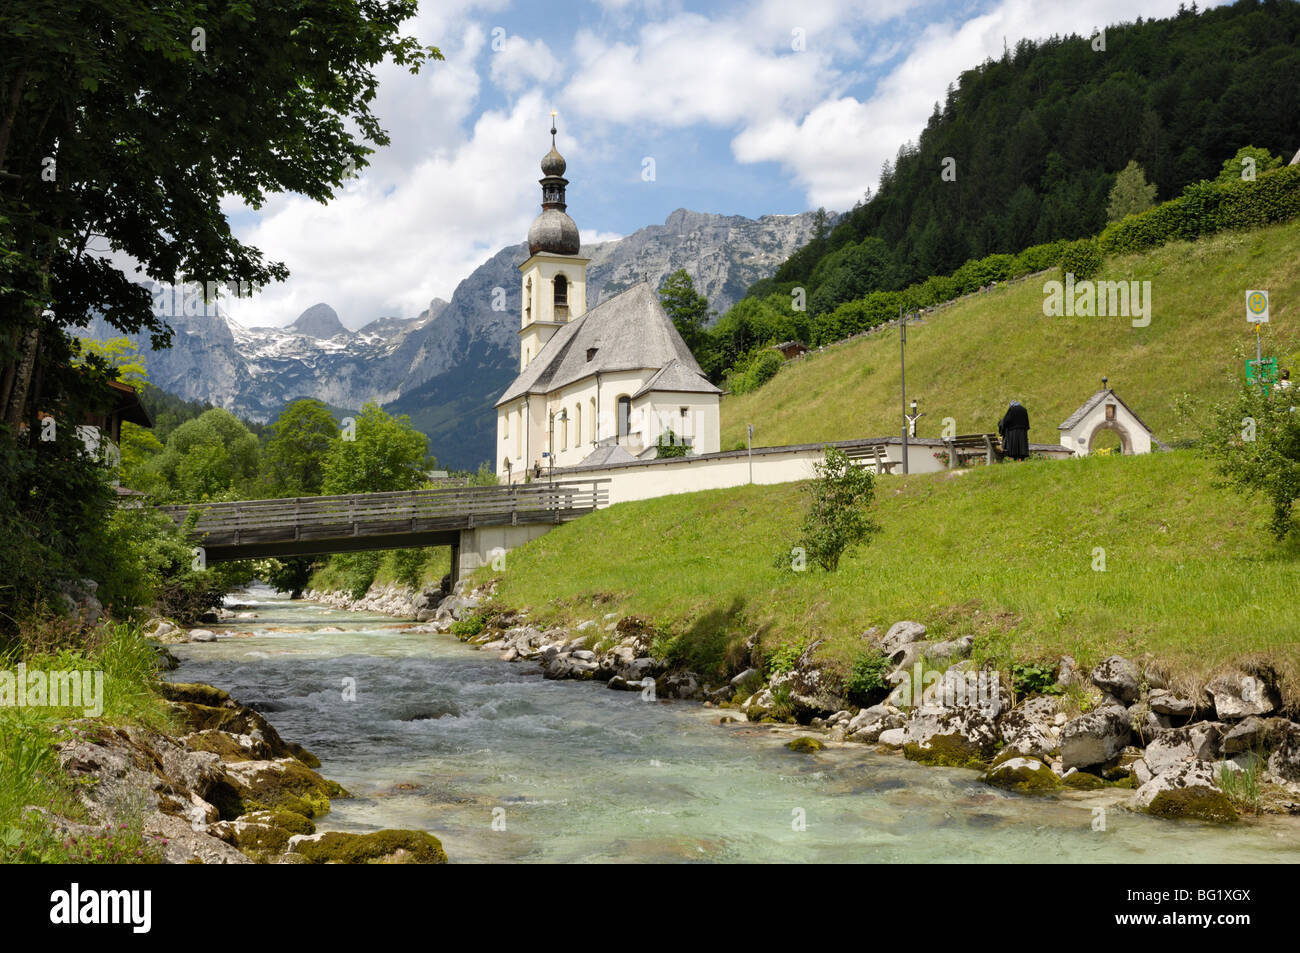 Ramsau église, près de Berchtesgaden, Bavaria, Germany, Europe Banque D'Images